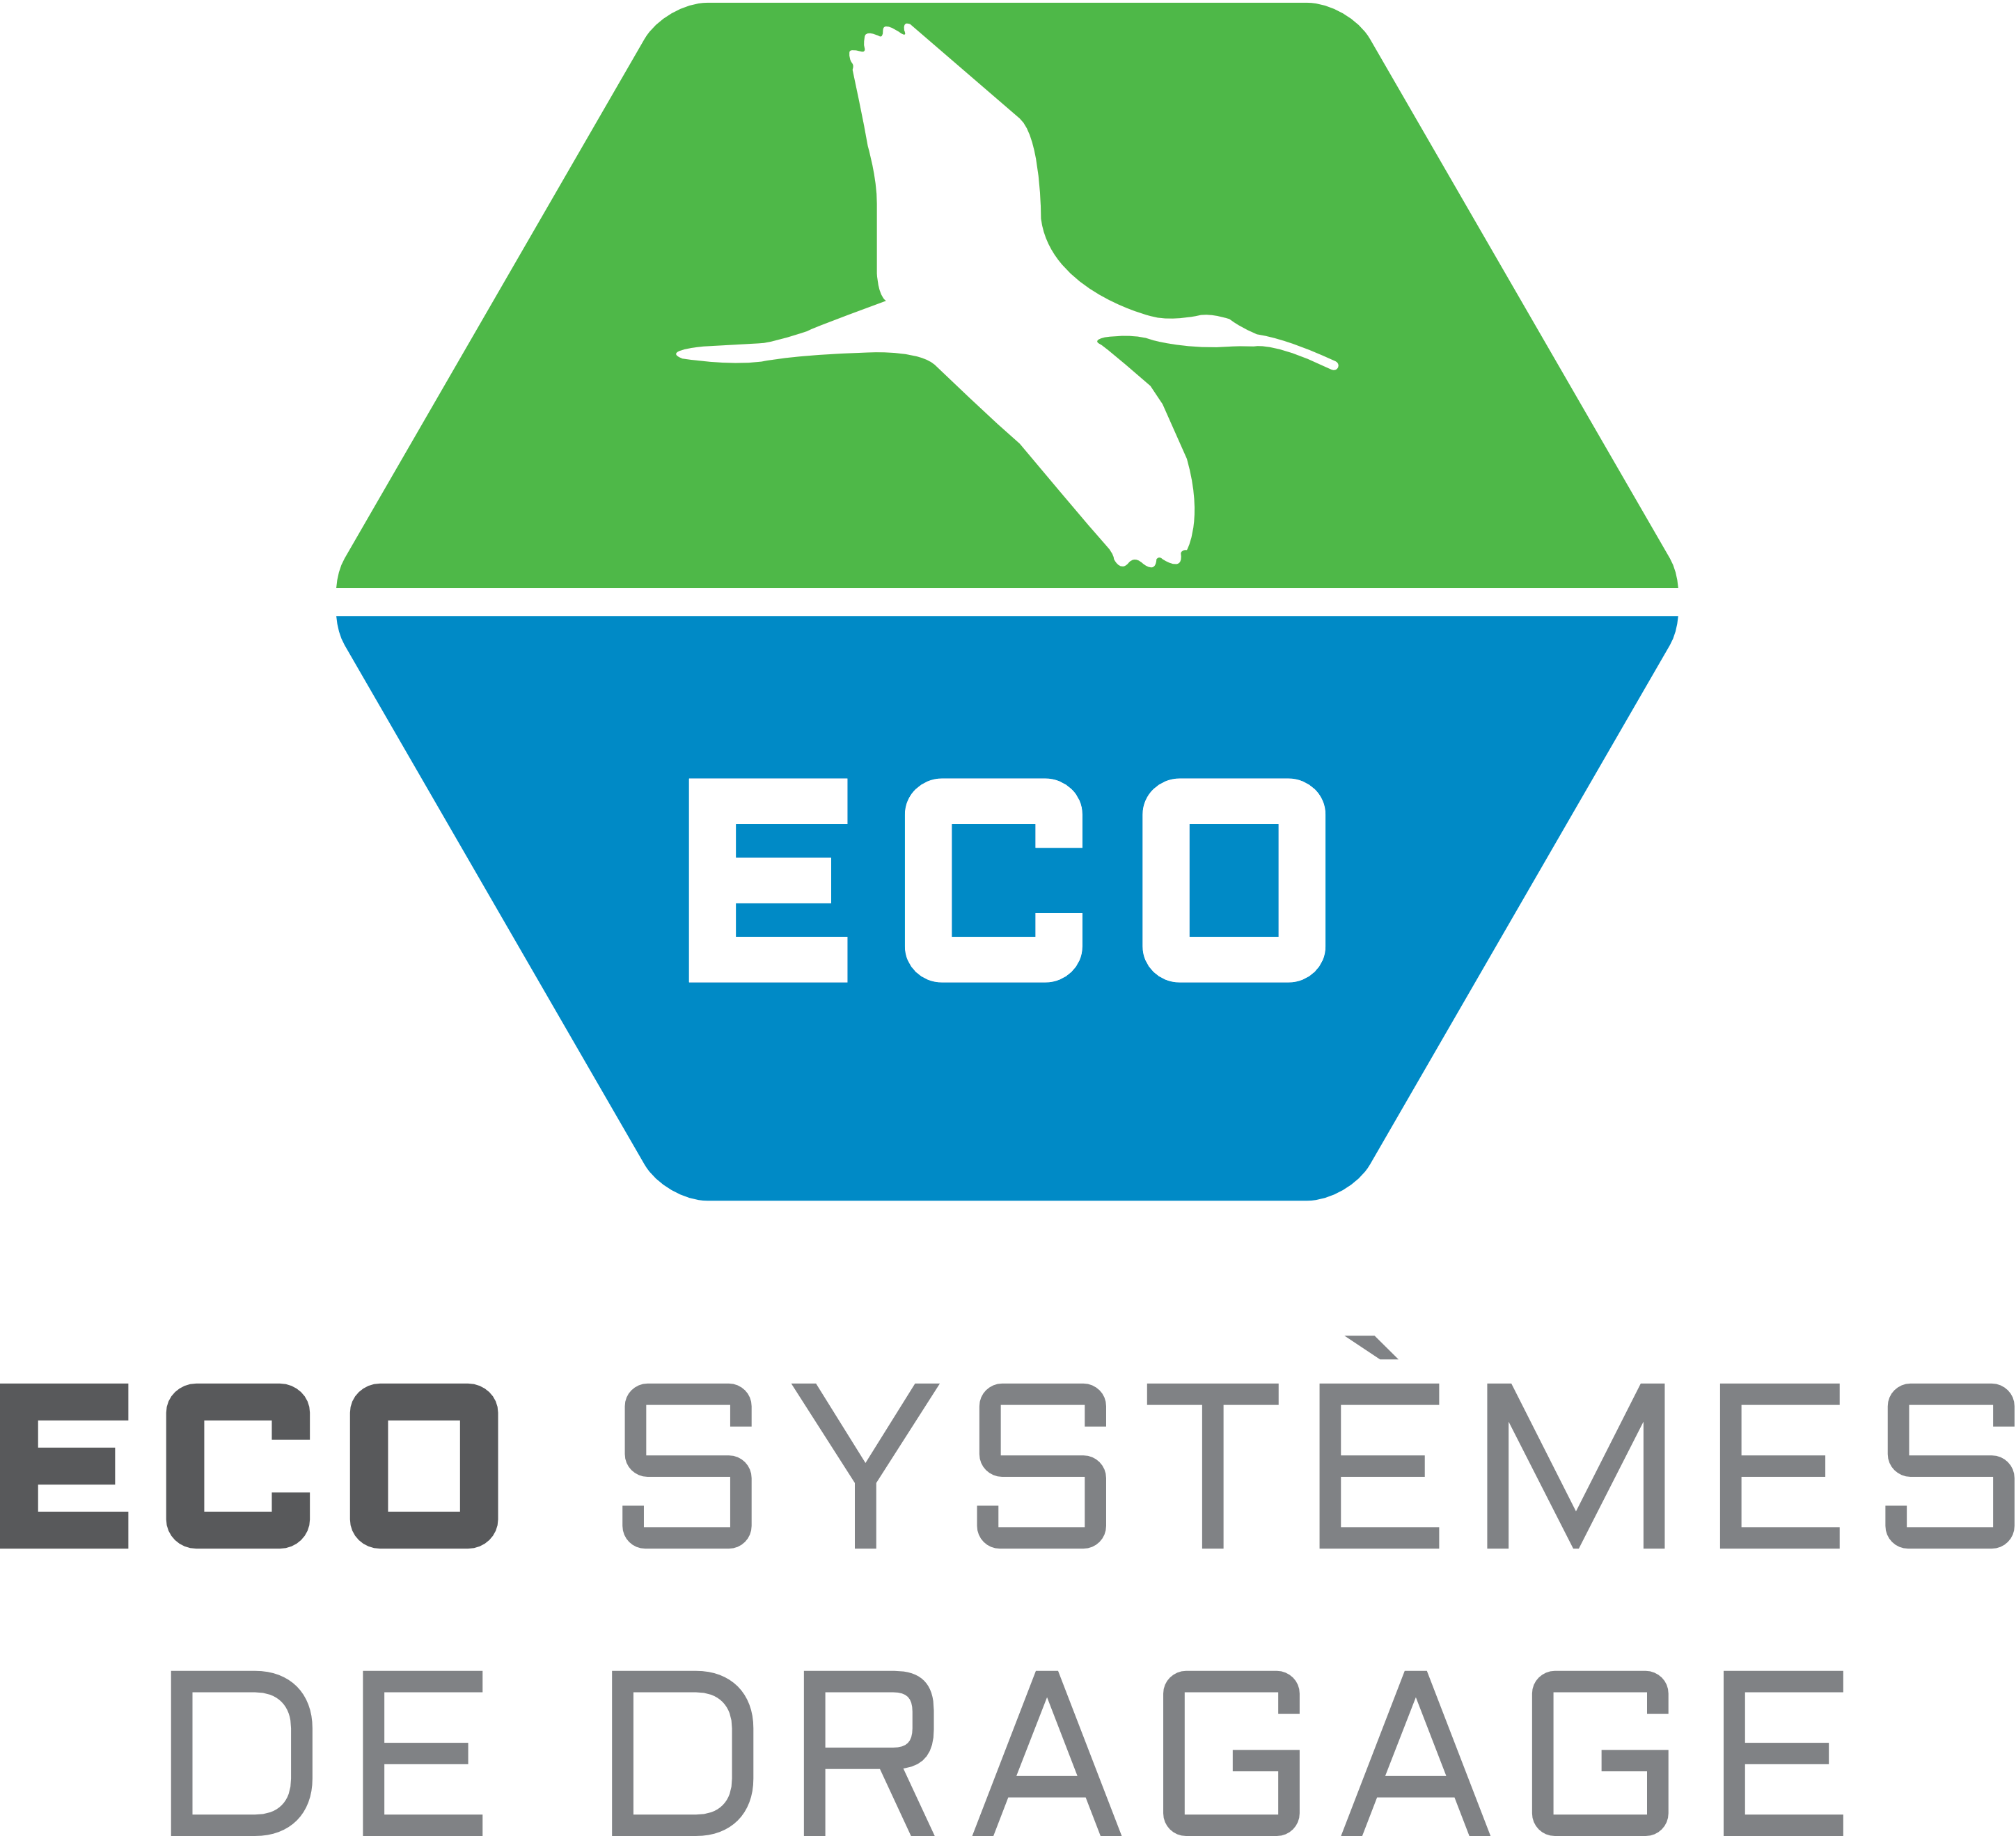 eco-systeme-de-dragage